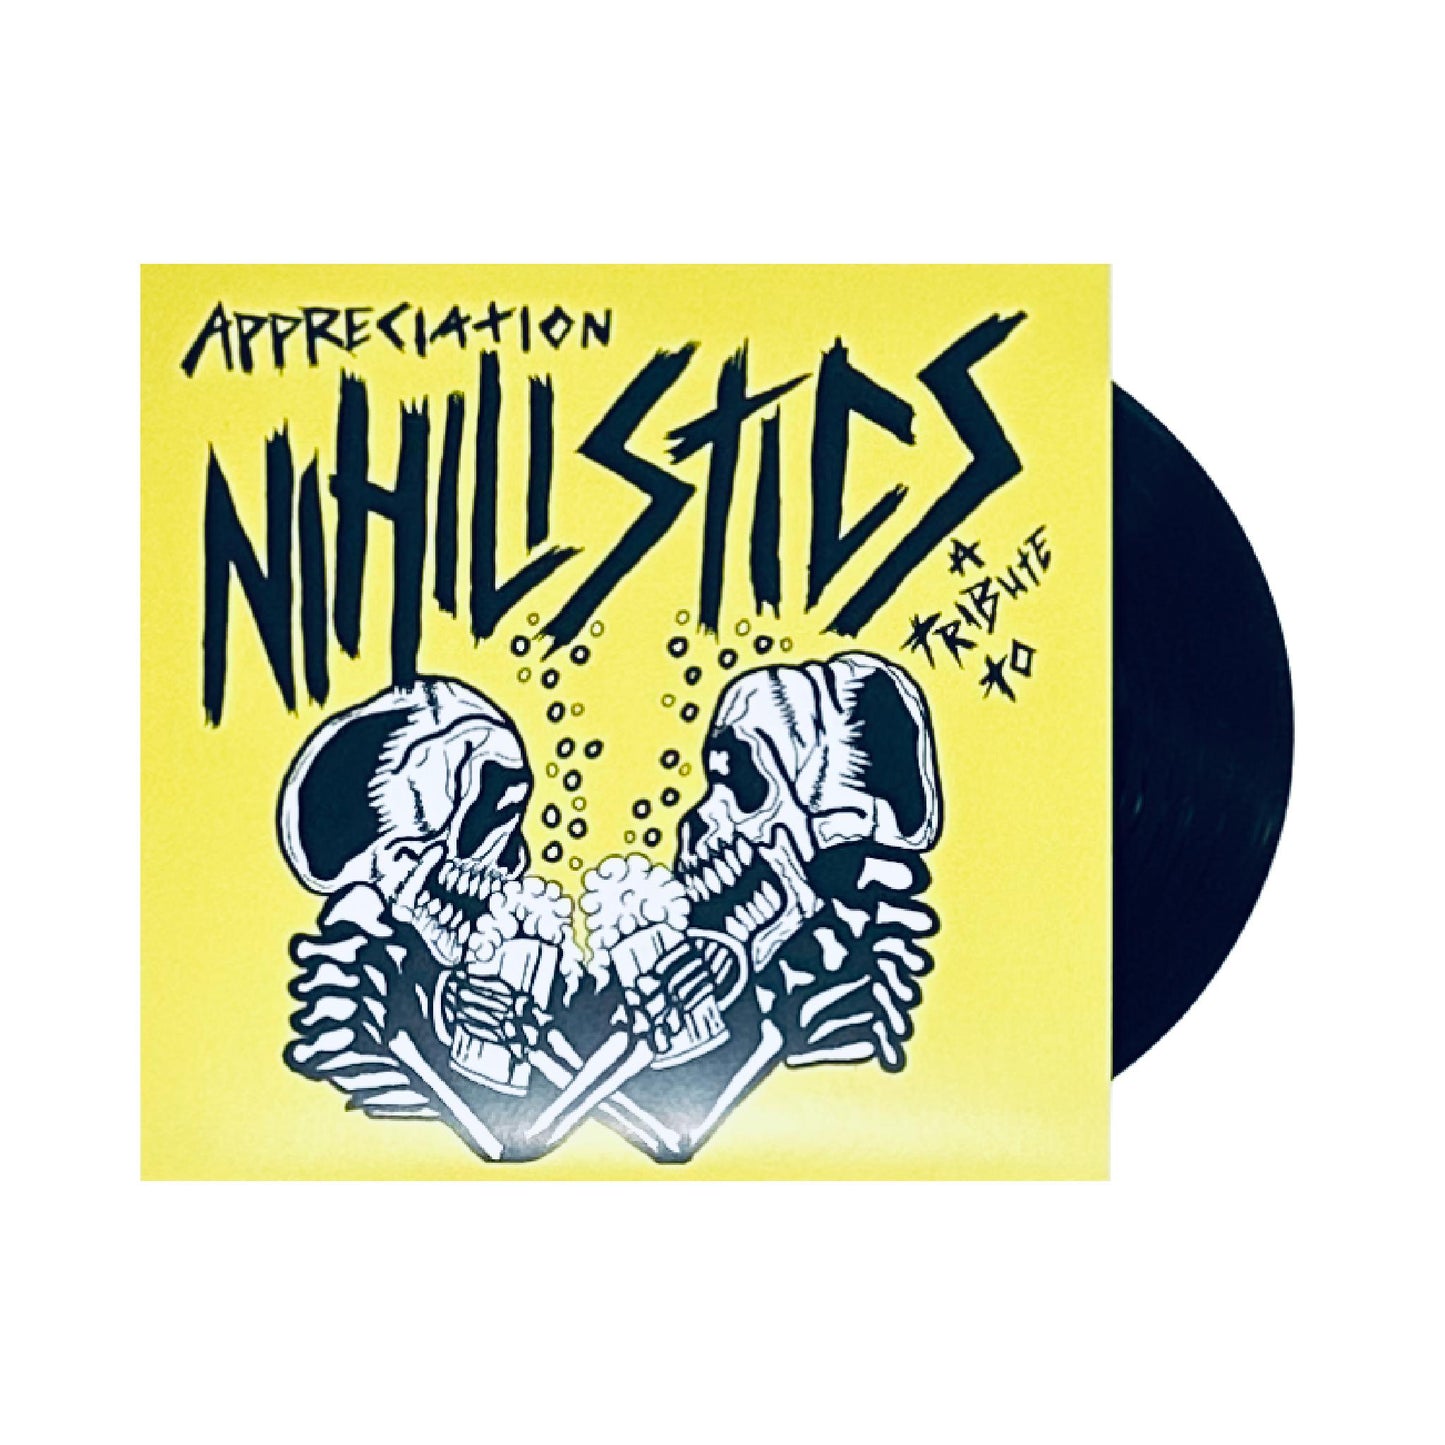 Various (V/A) - Appreciation: A Tribute to the Nihilistics 7" EP (black vinyl)